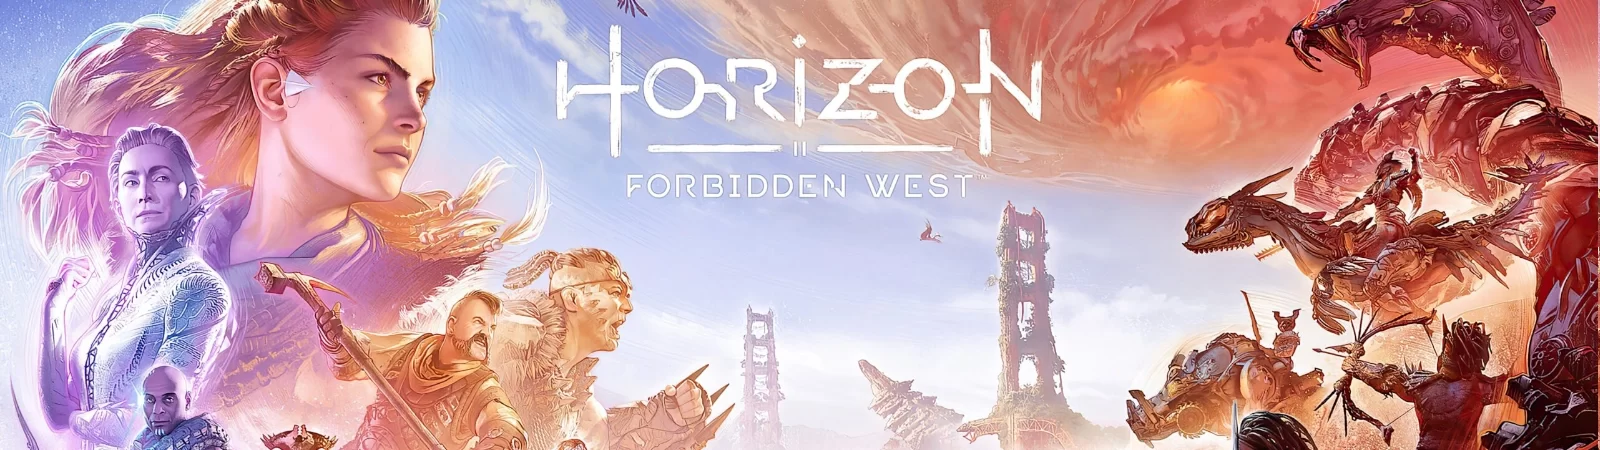 Horizon.Forbidden.West.complete.edition-GB-Slider